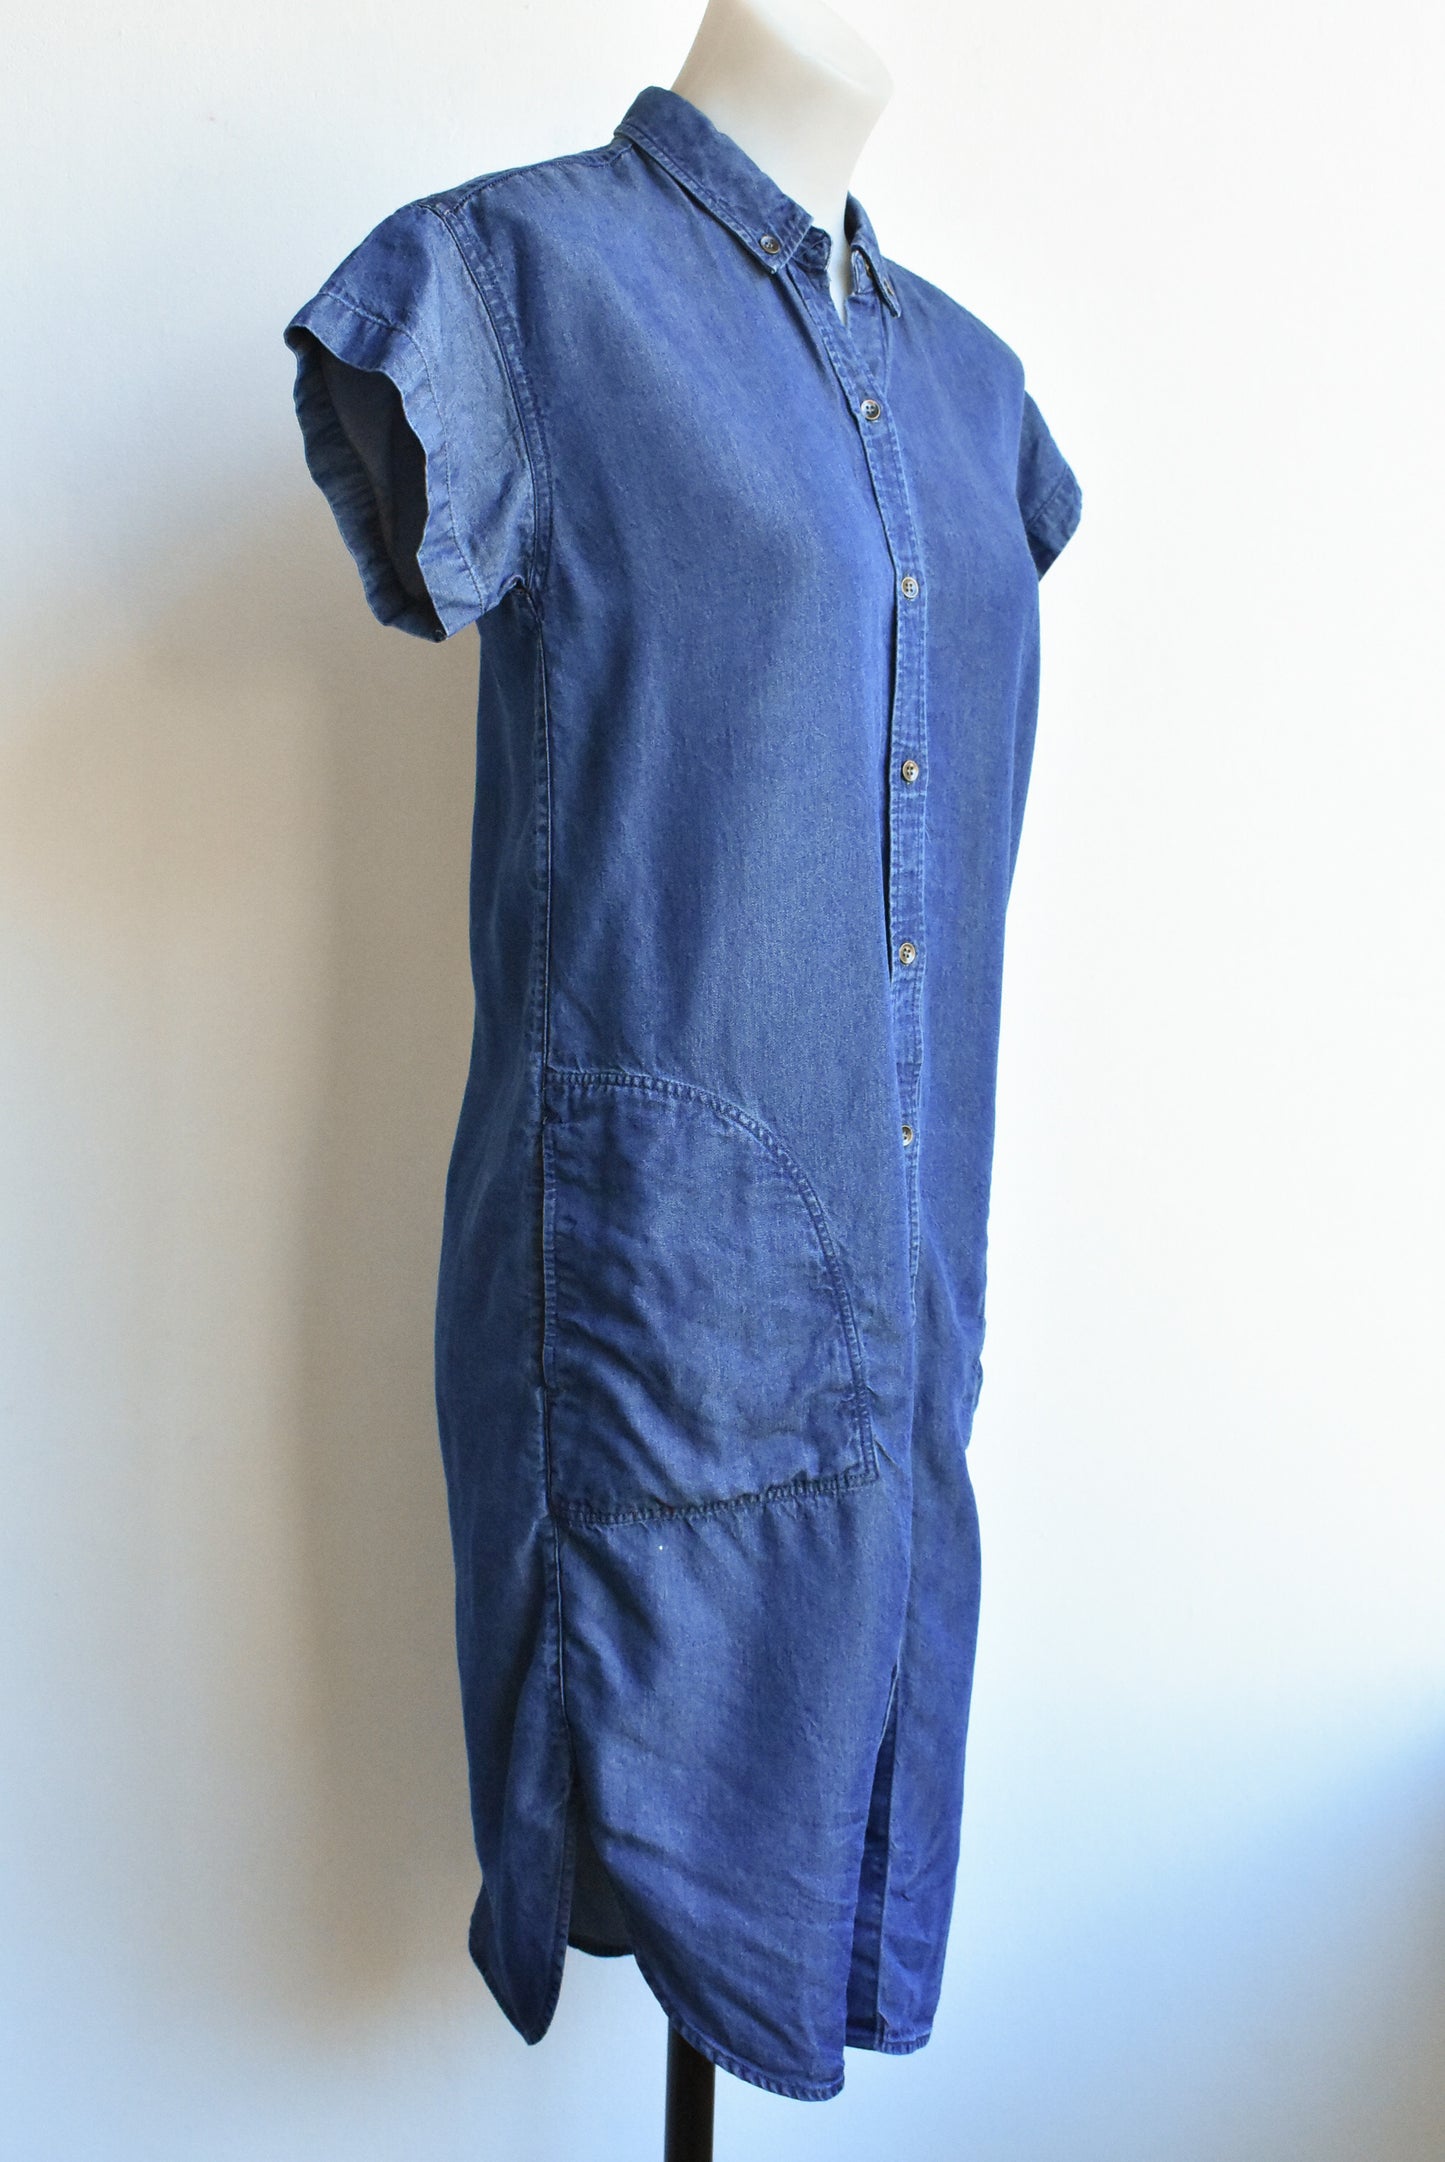 Sportscraft short sleeve synthetic jean dress, size 6